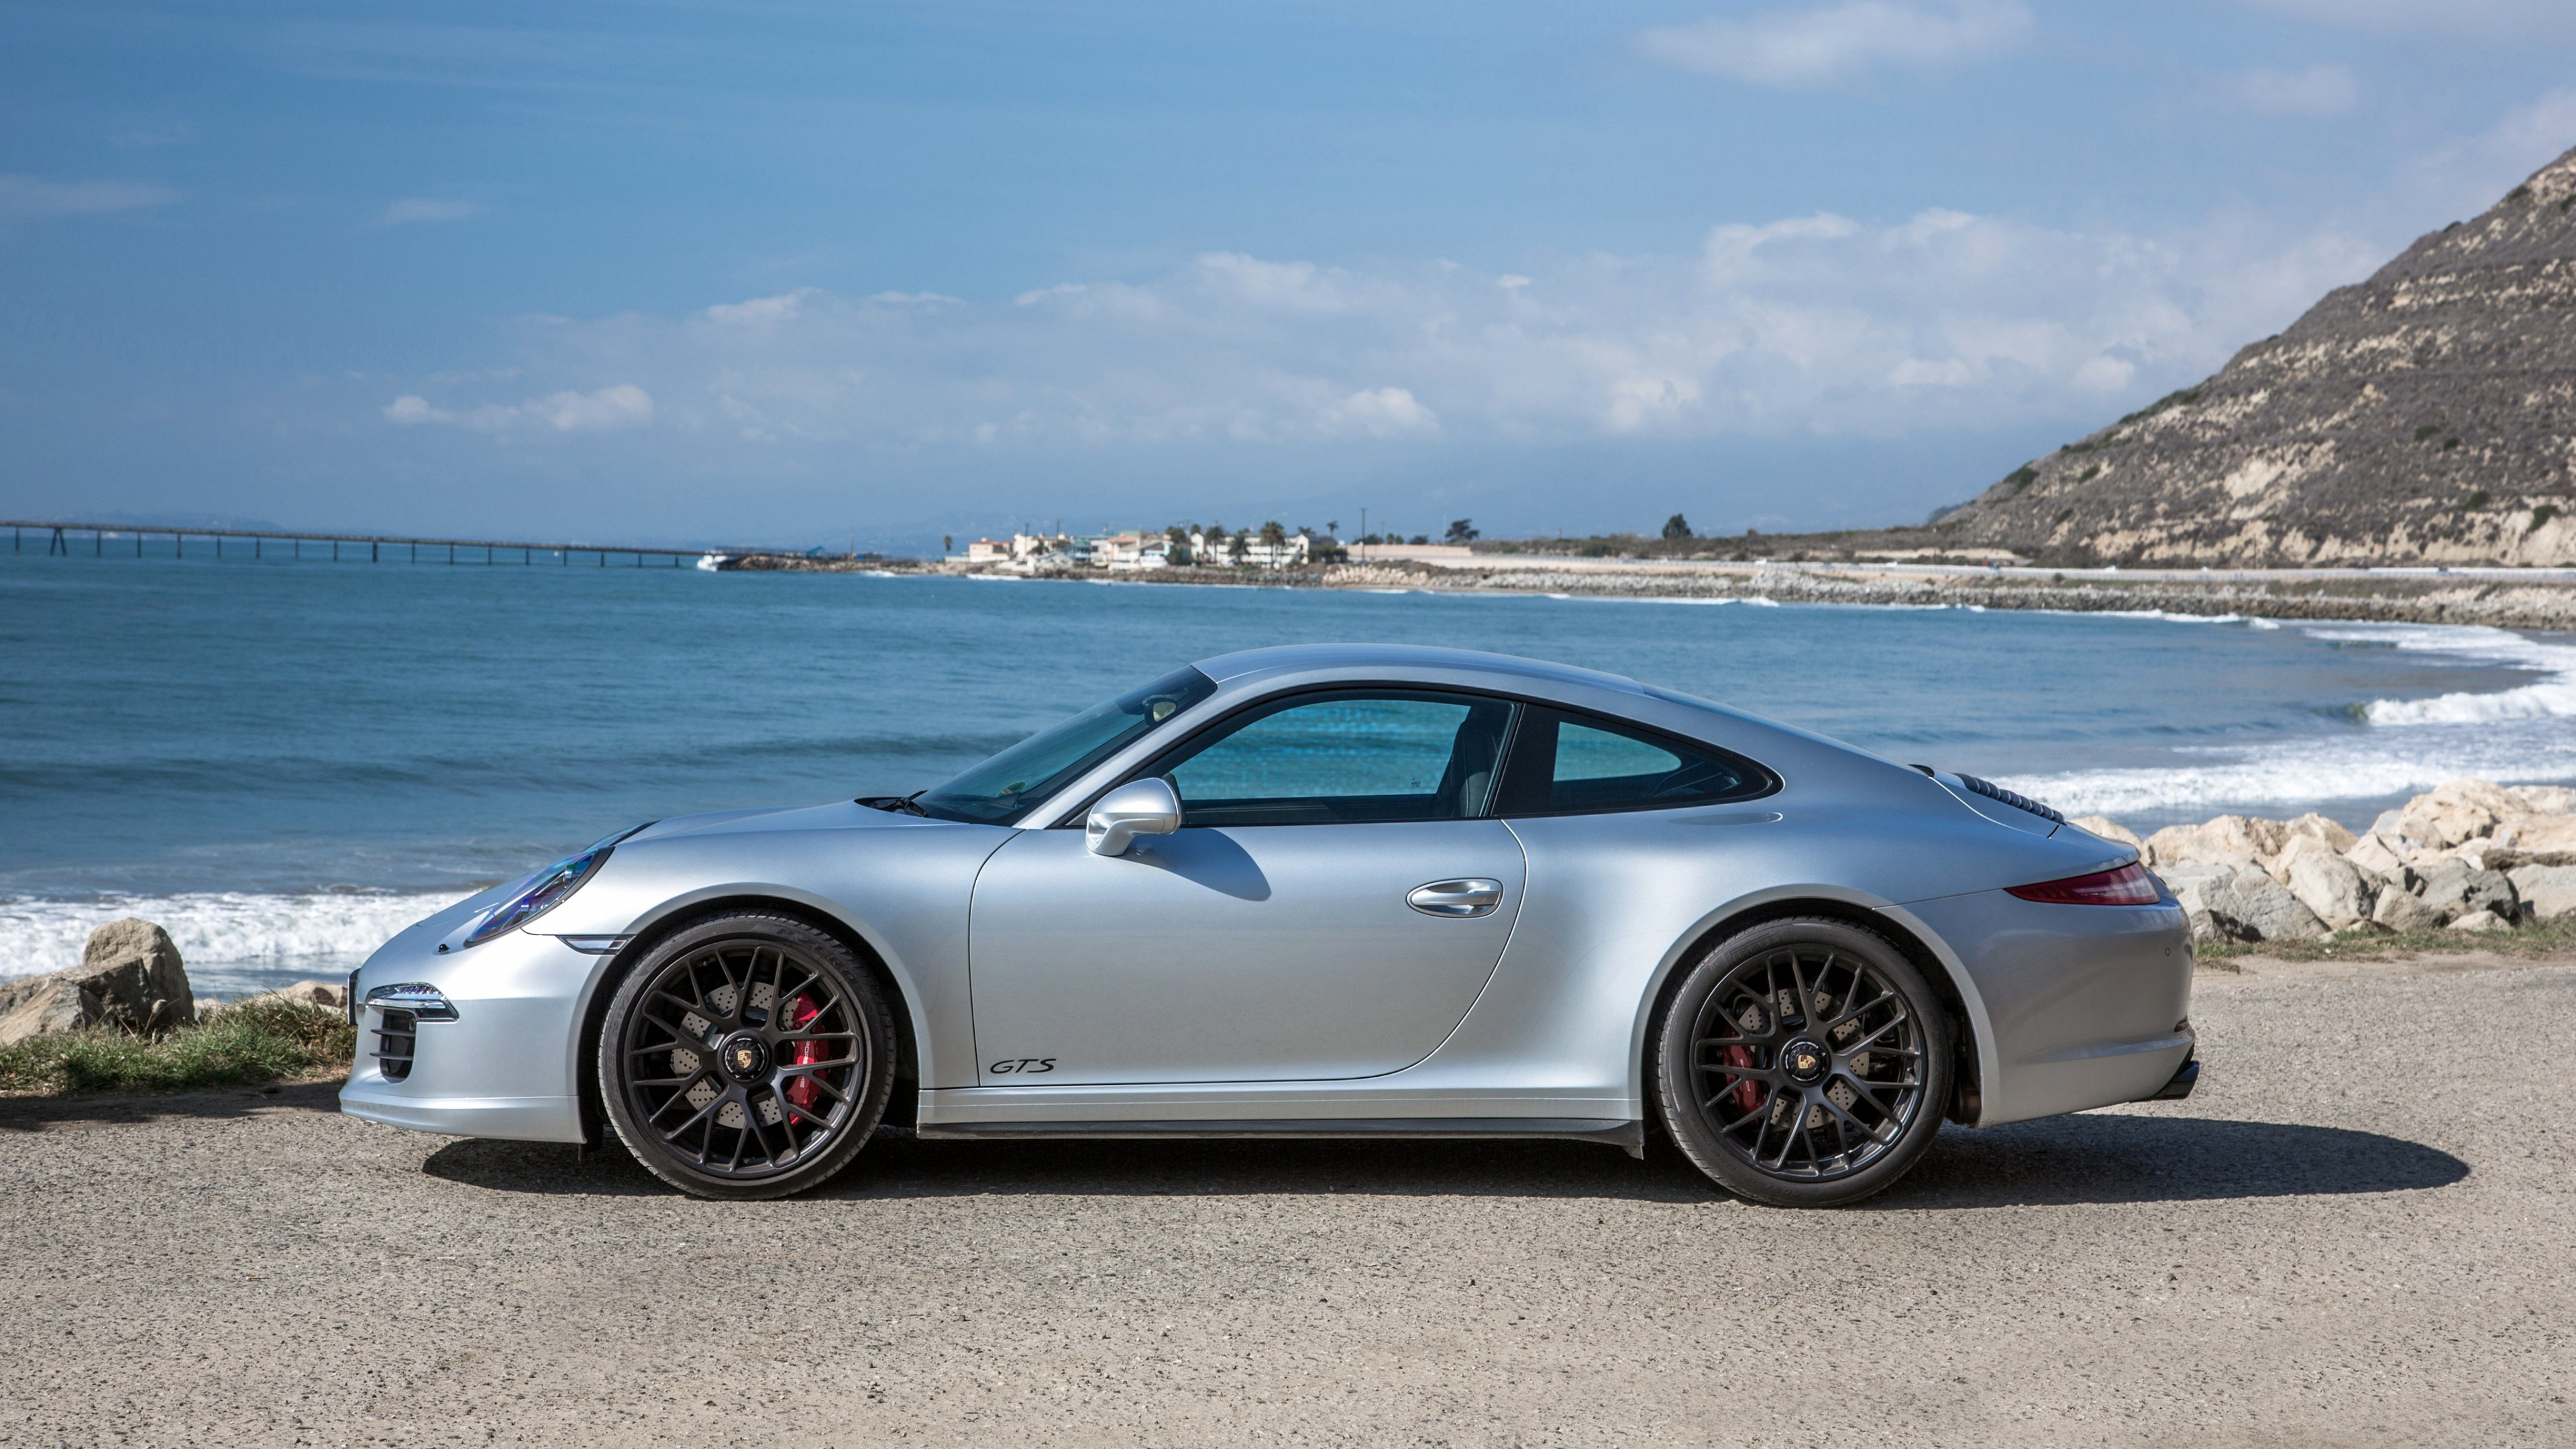 Silver Porsche 911 Garée Sur Mer Pendant la Journée. Wallpaper in 3840x2160 Resolution